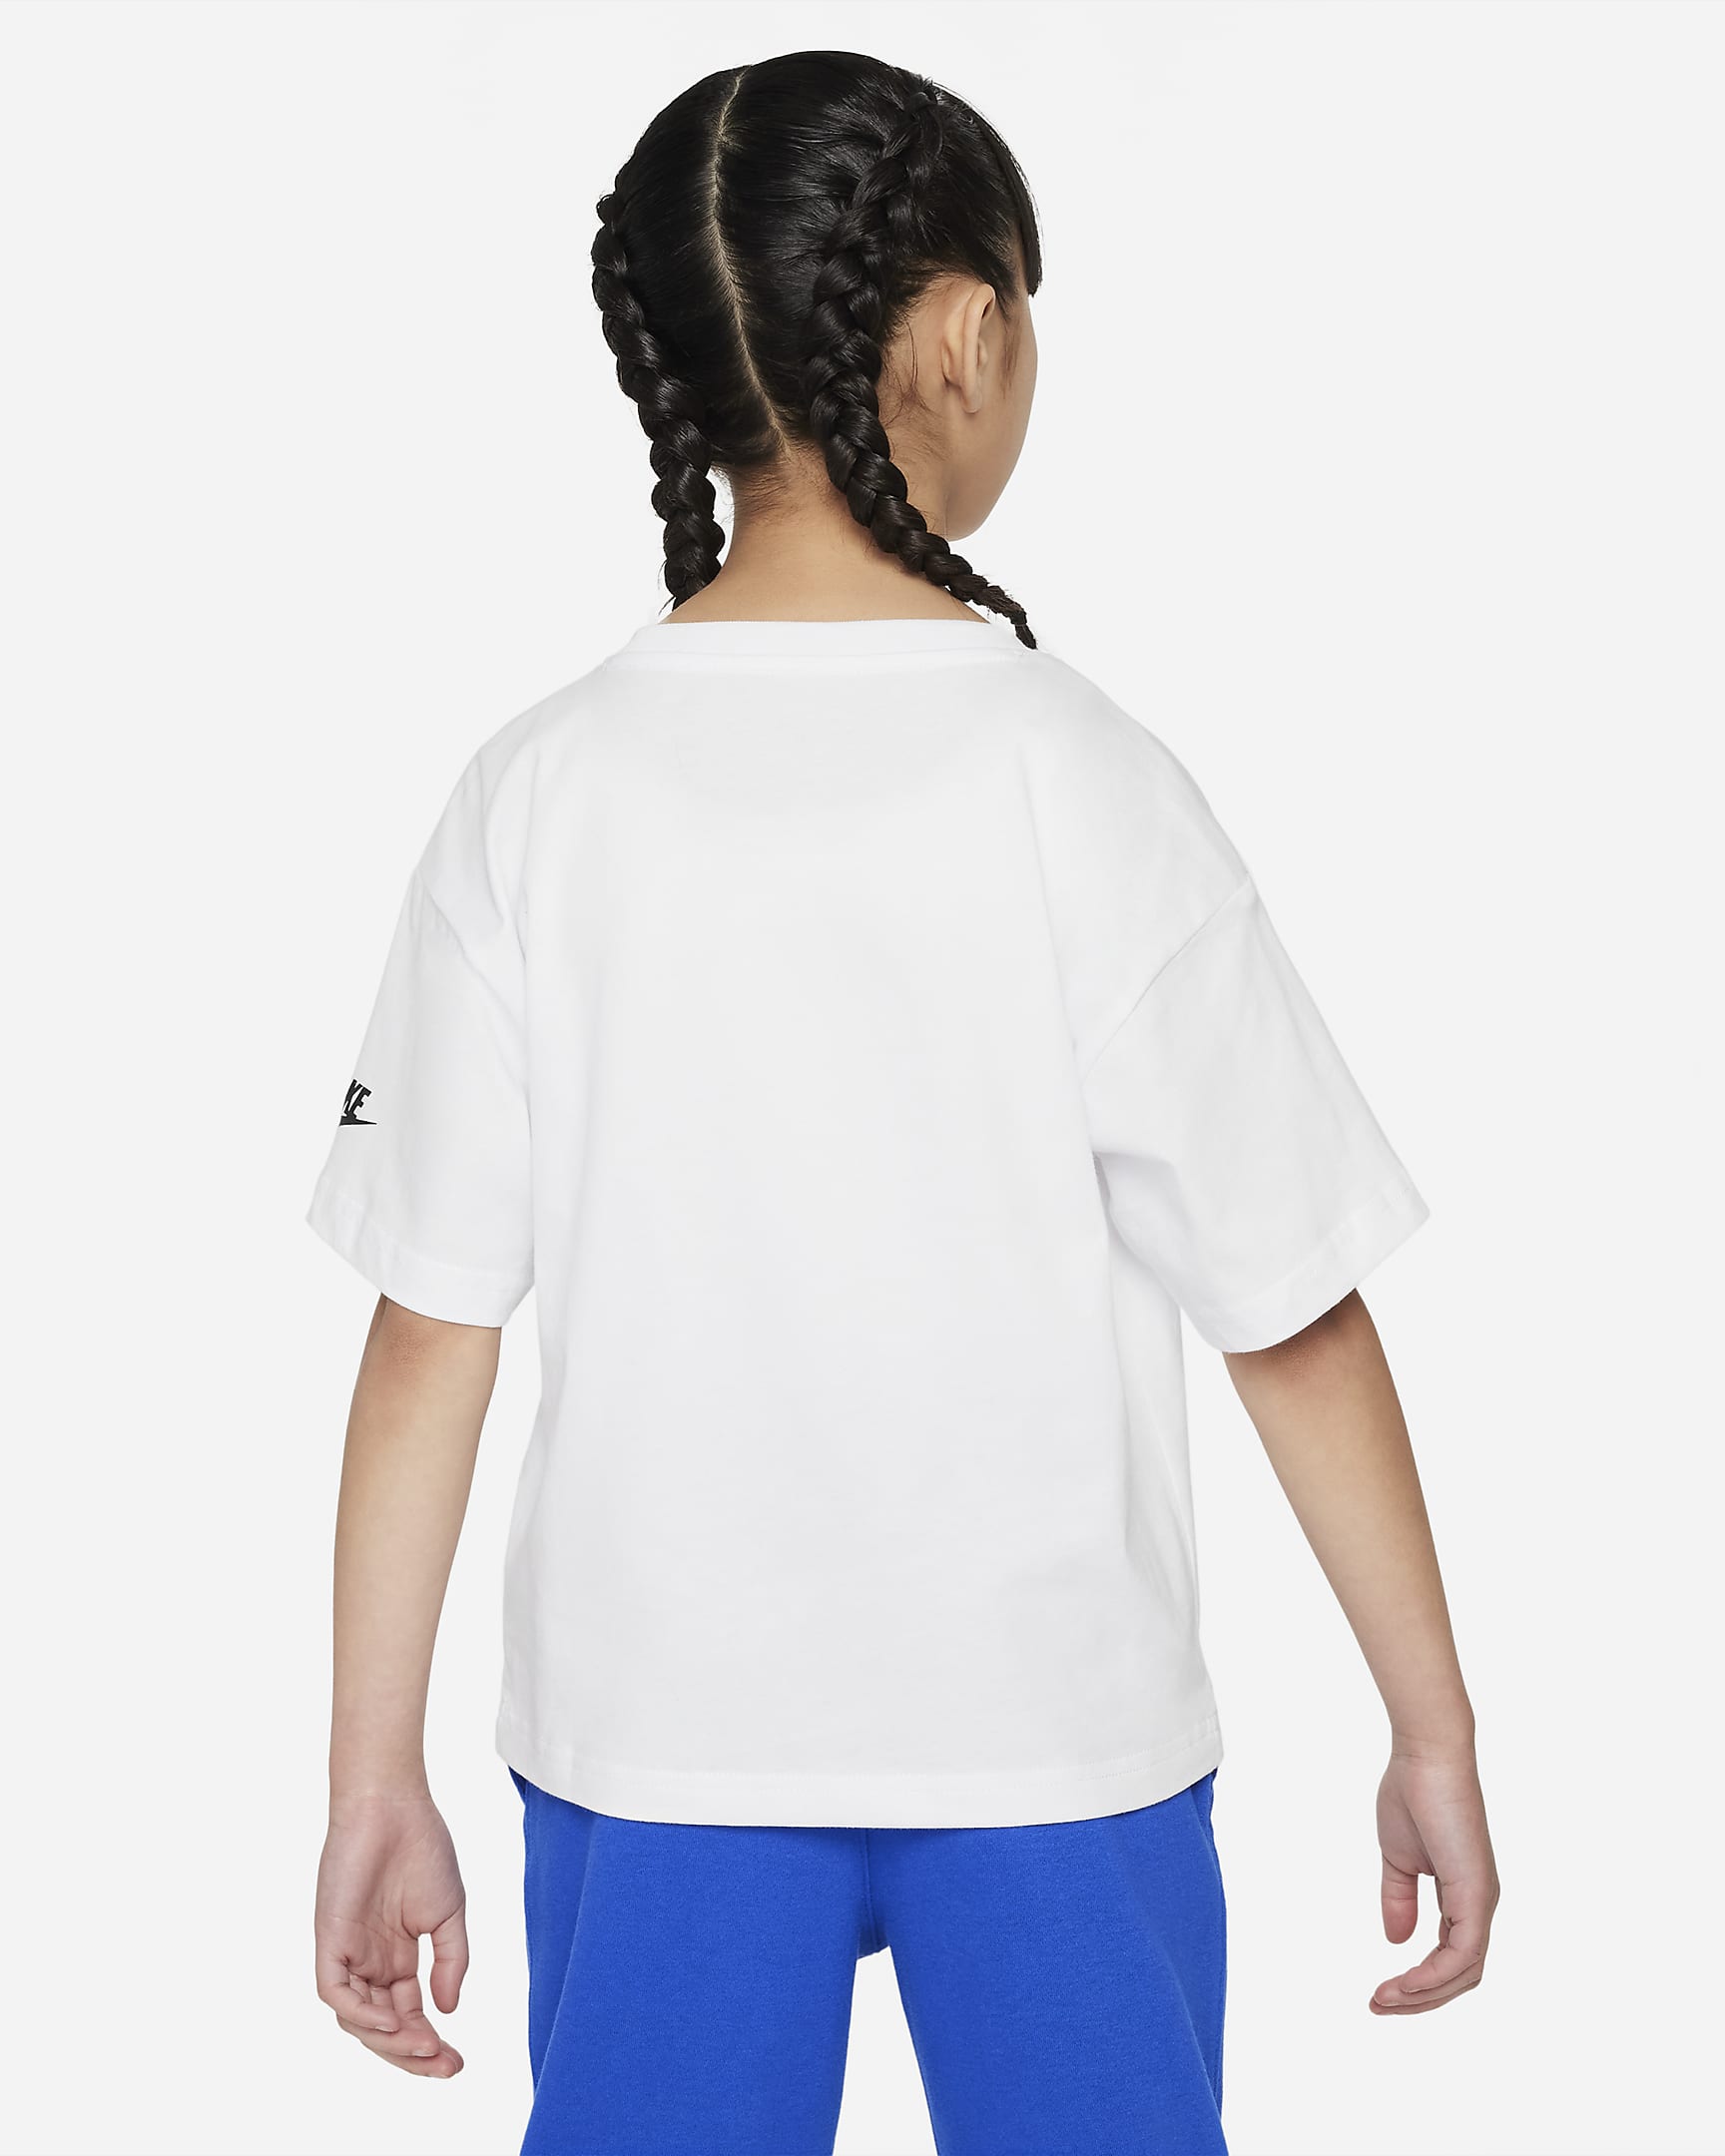 Nike 'You Do You' Tee Younger Kids' T-Shirt. Nike SE